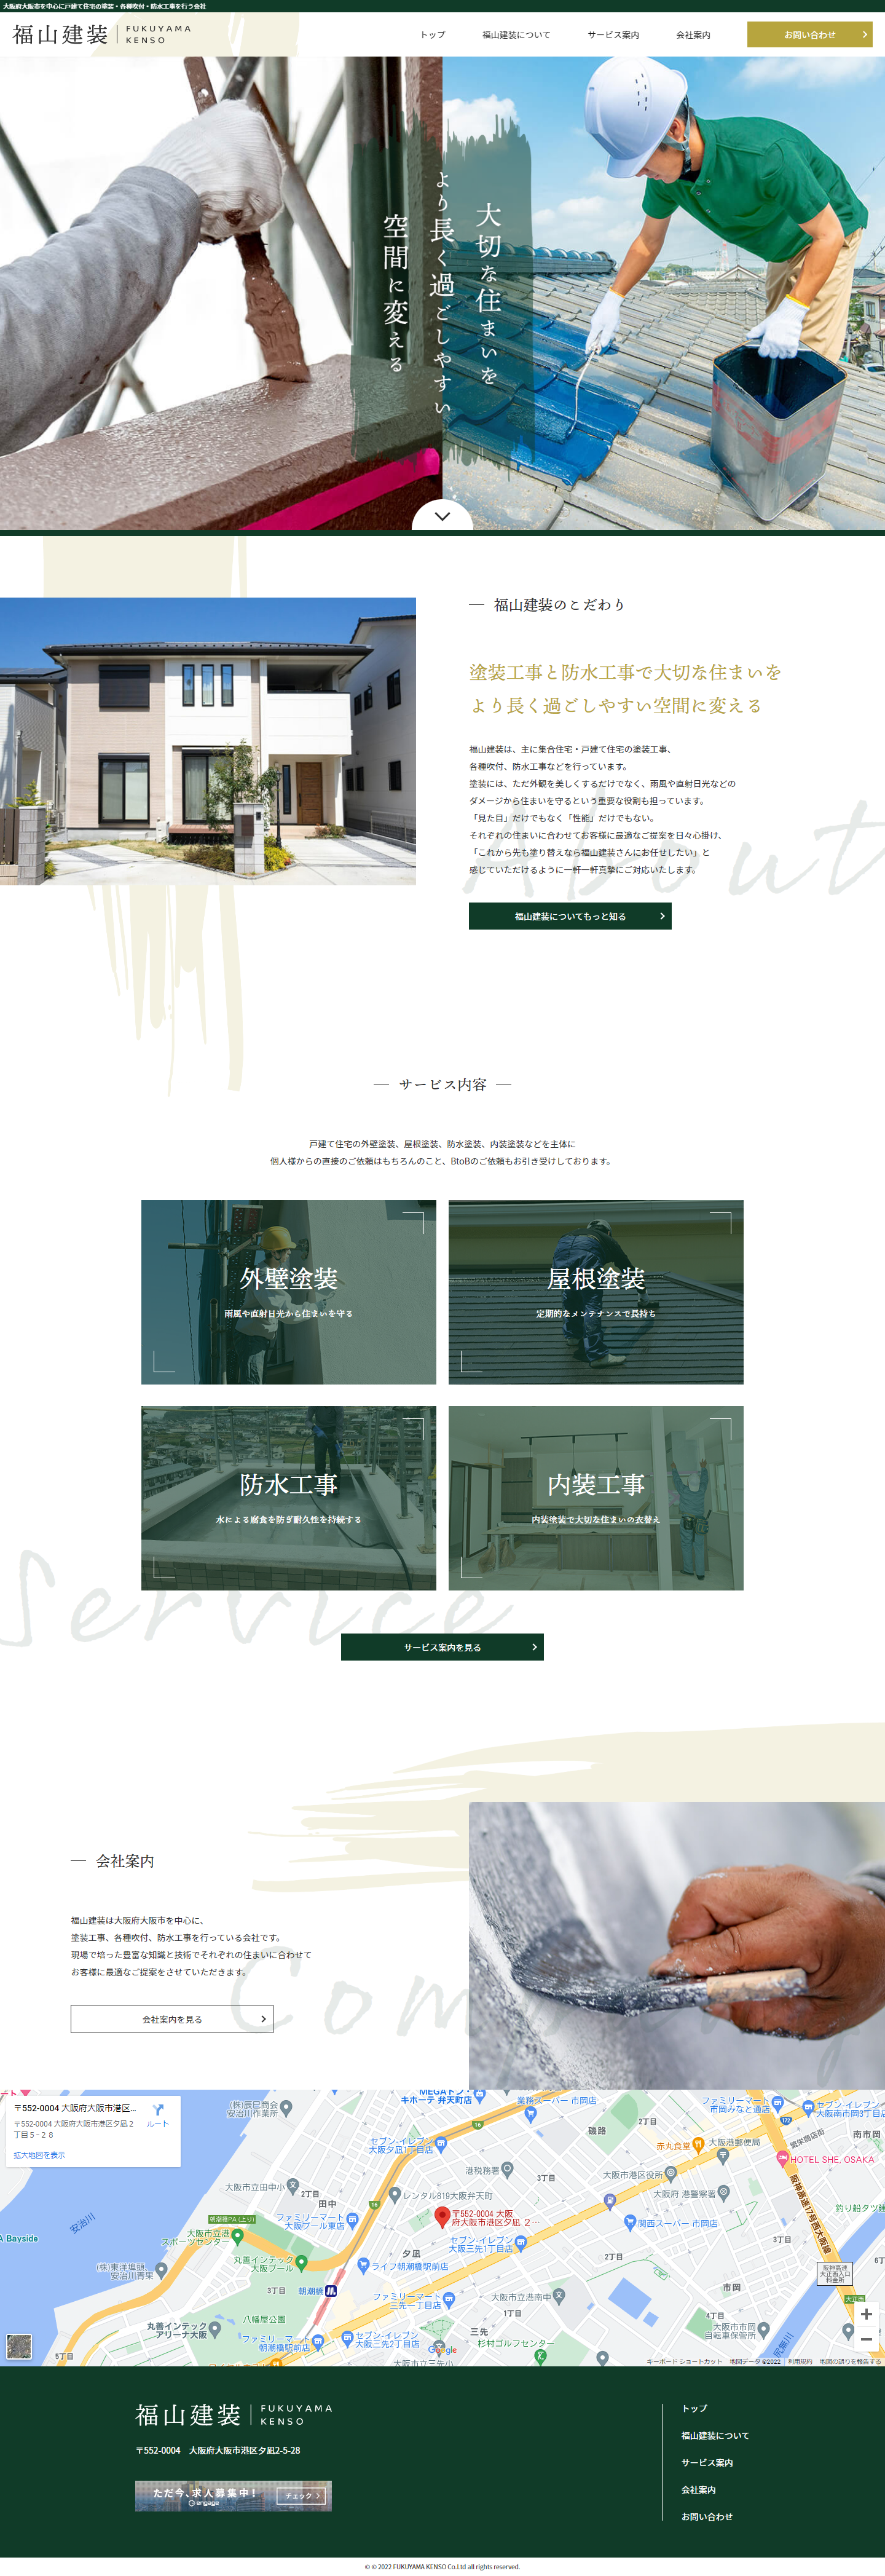 福山建装 コーポレートサイト：大阪のホームページ制作会社アップポイントの制作例